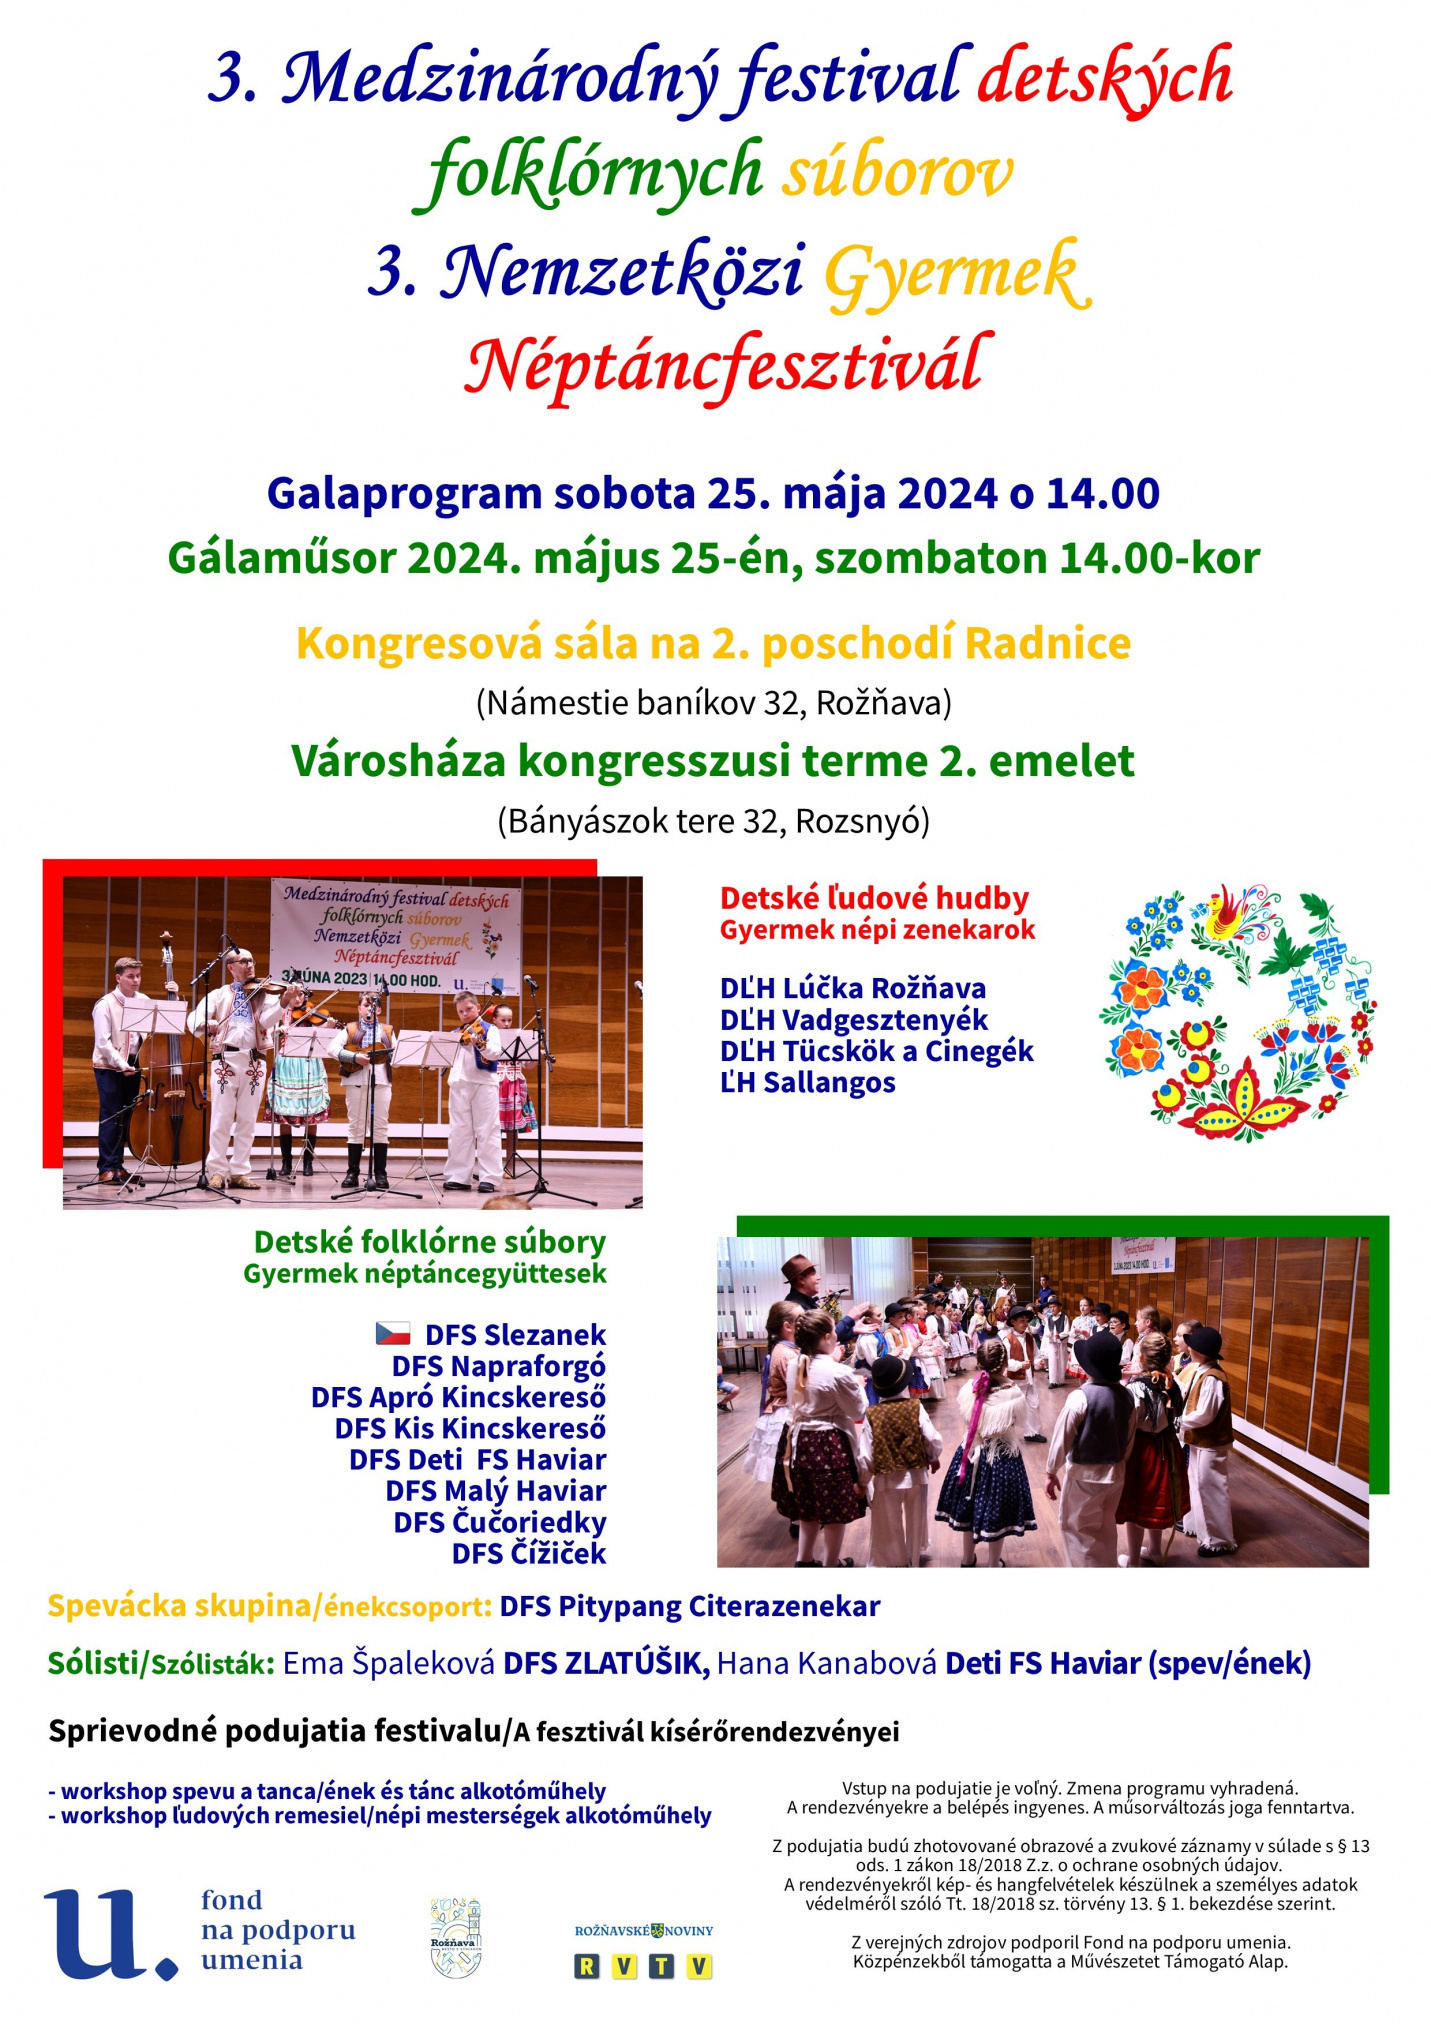 plagat detsky folklorny festival